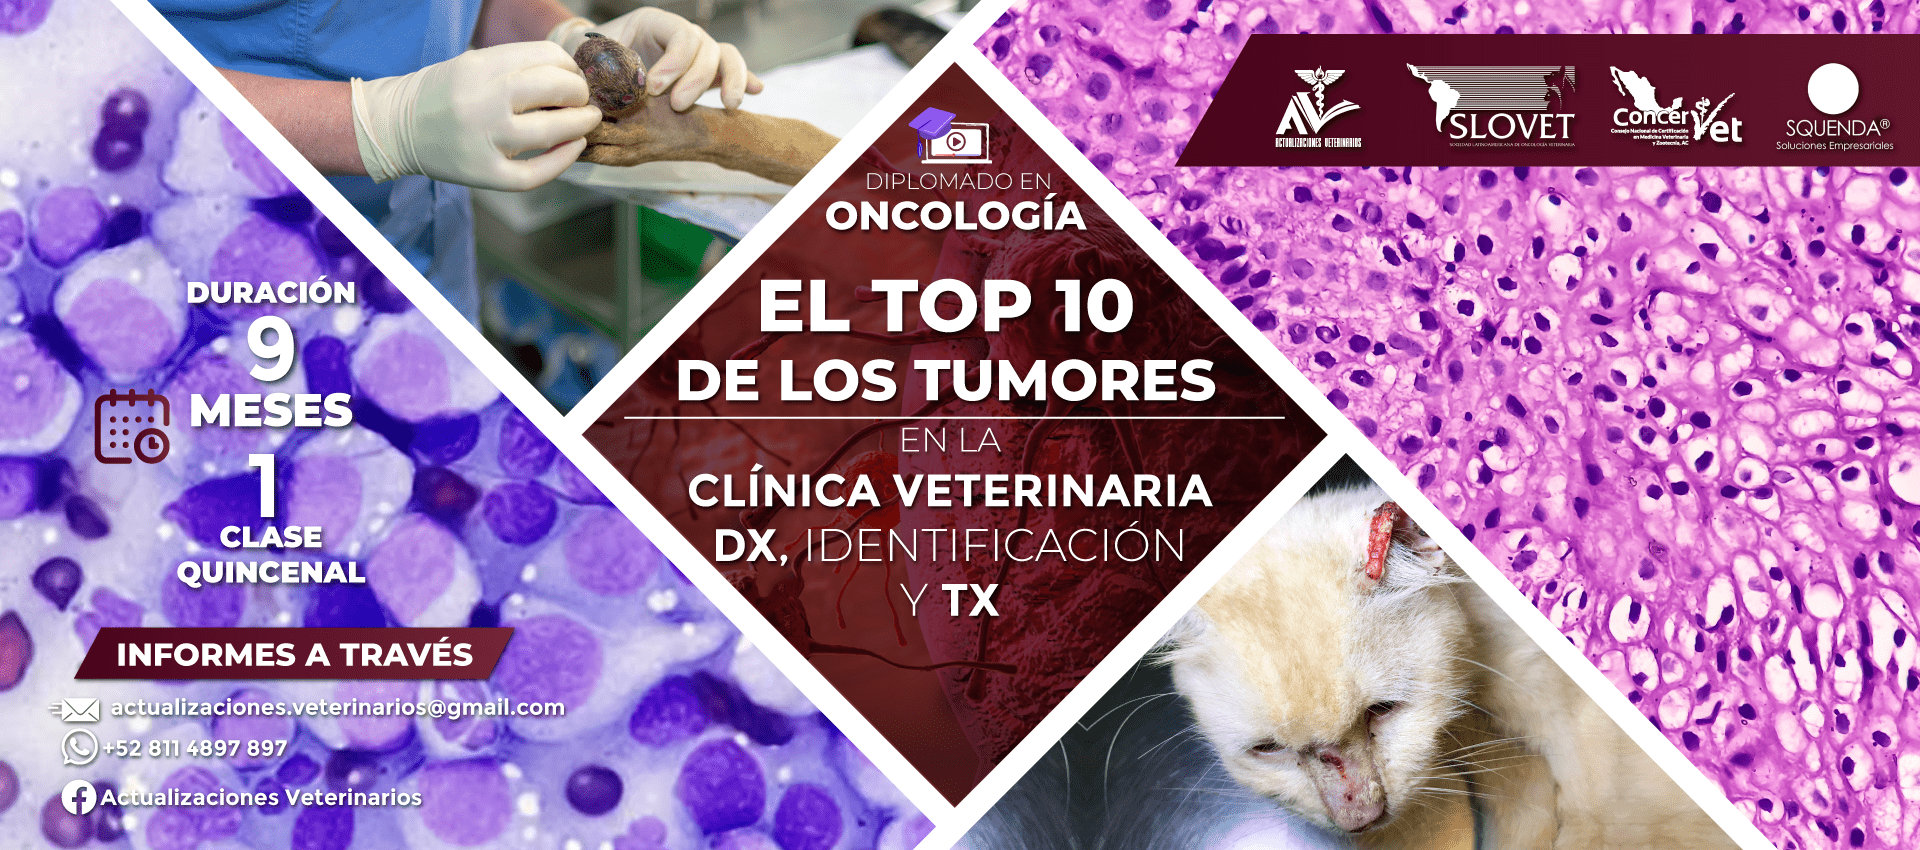 Diplomado en oncología el top 10 de los tumores